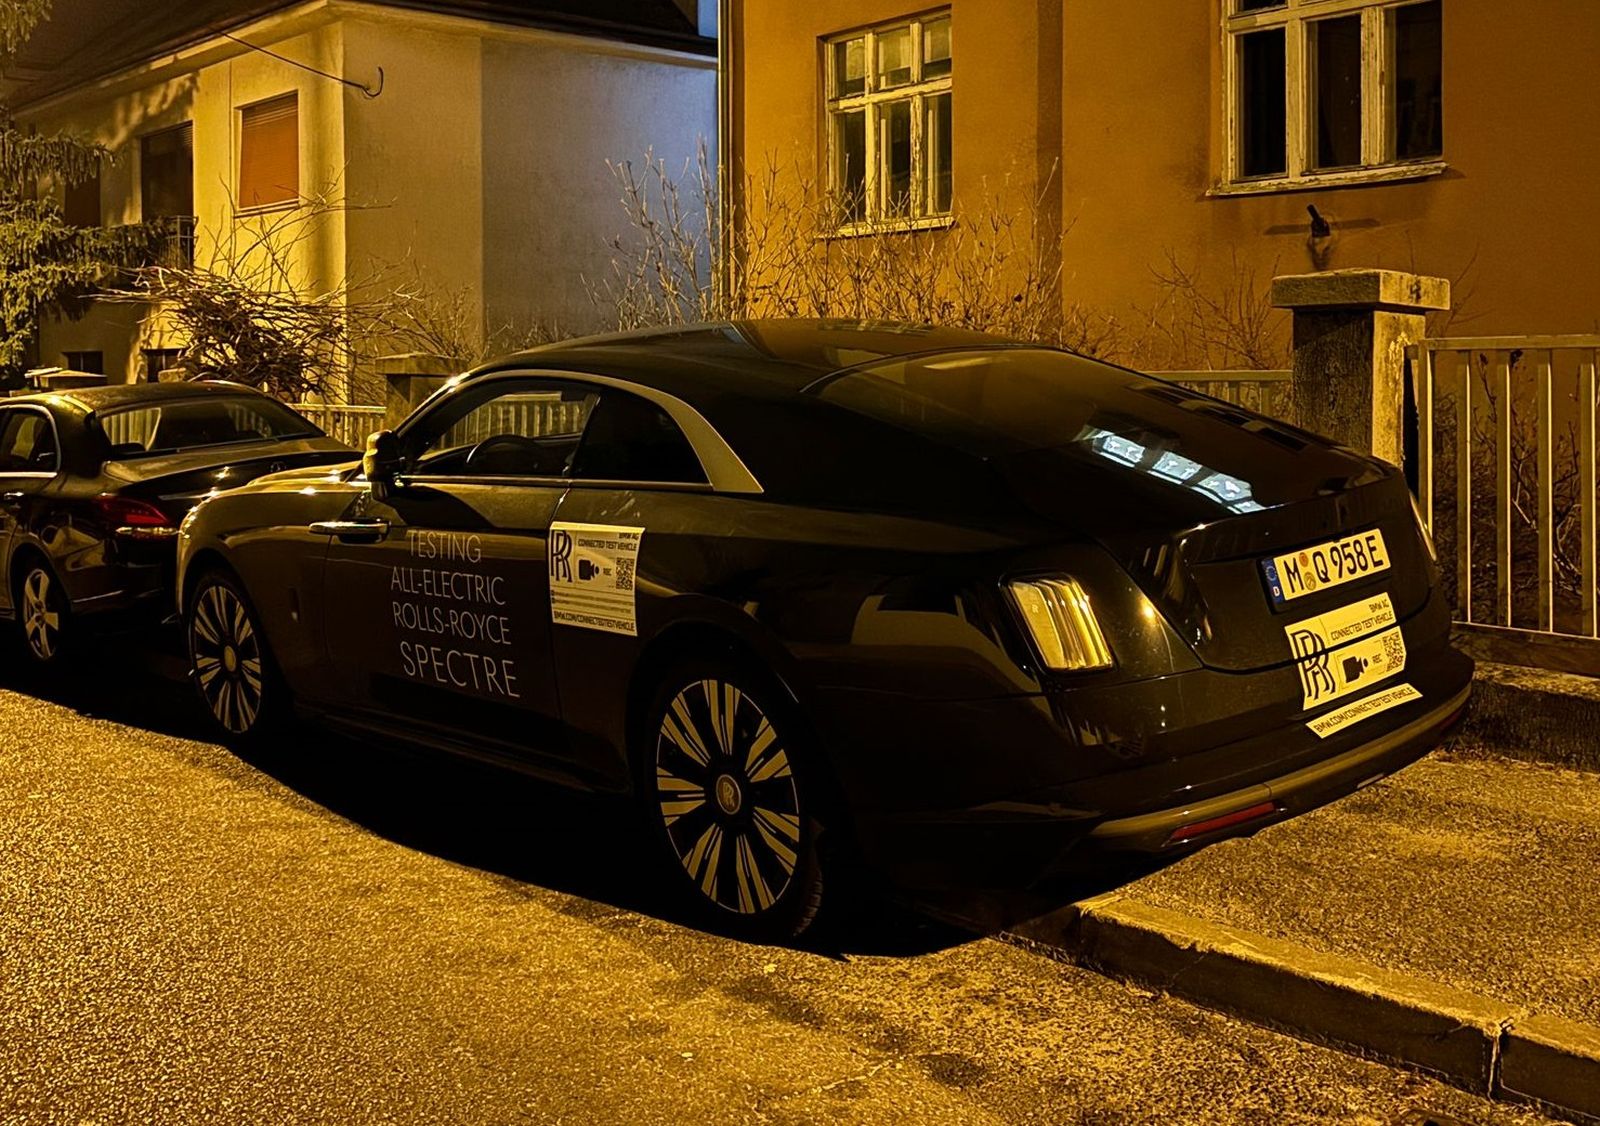 Rolls-Royce Spectre privlači veliku pažnju u Zagrebu, električni prototip još je u test fazi